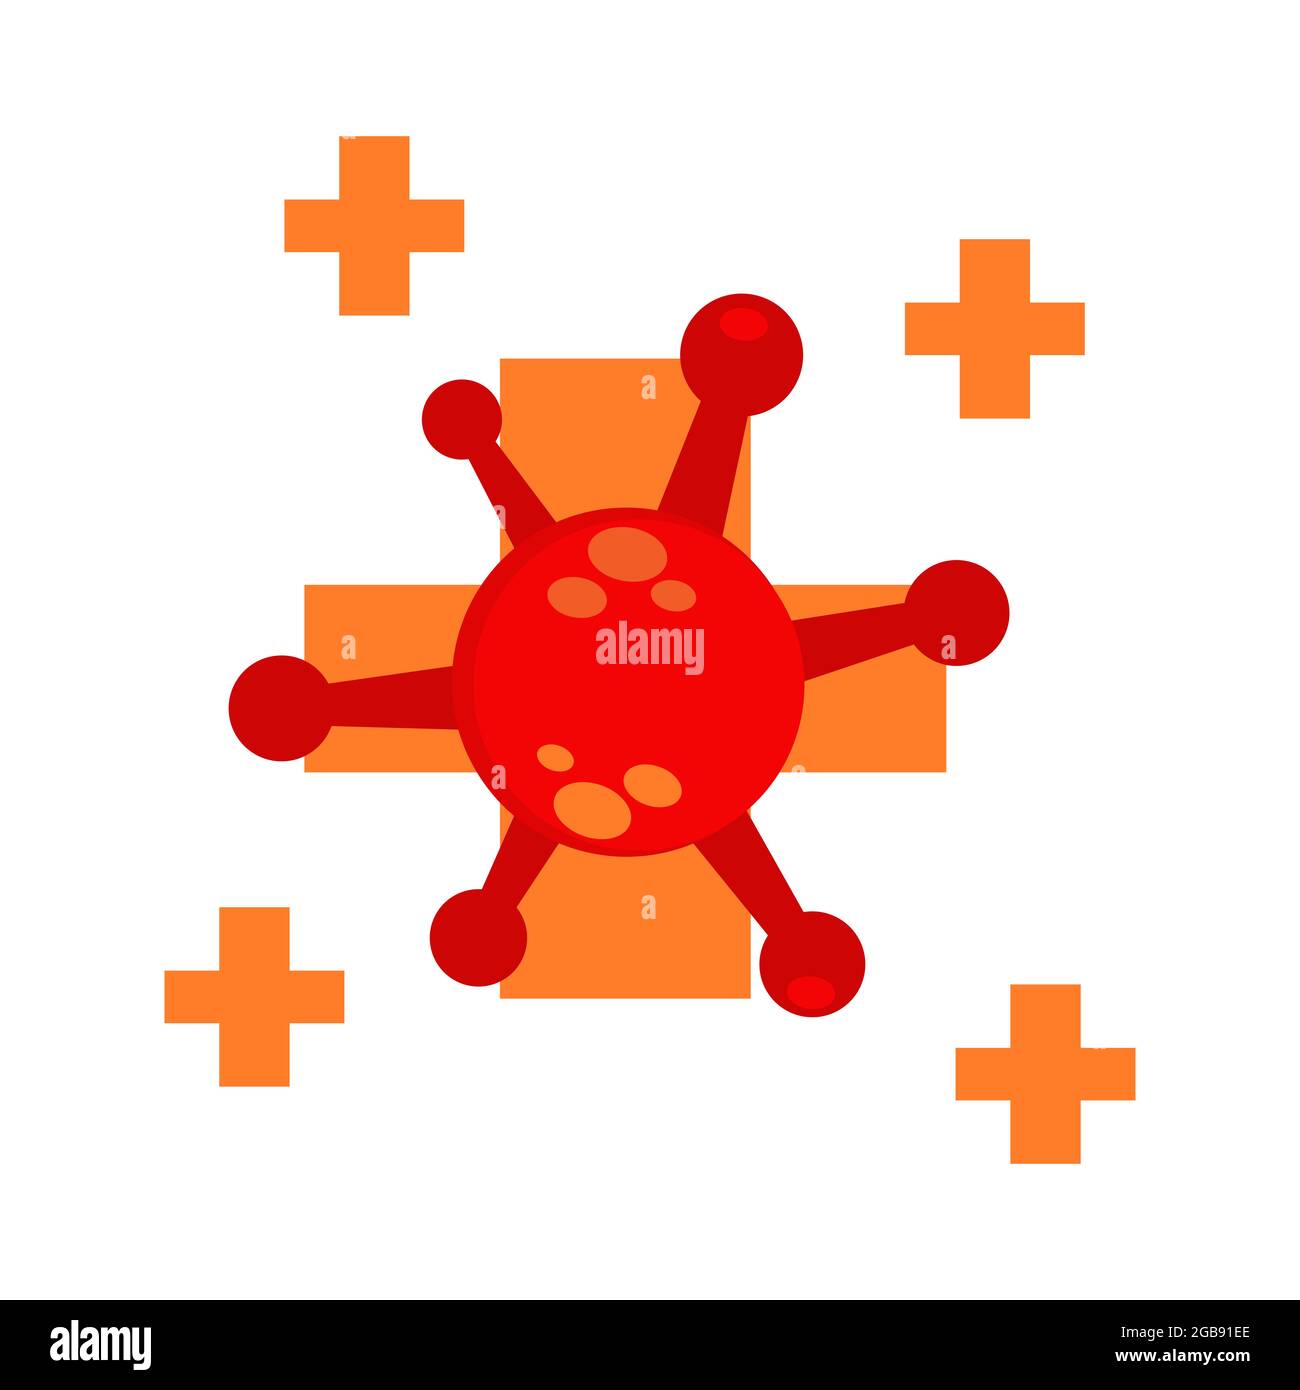 simbolo di salute con disegno di illustrazione del virus. illustrazione di protezione del virus pandemico. disegno di illustrazione del virus. su sfondo bianco Foto Stock